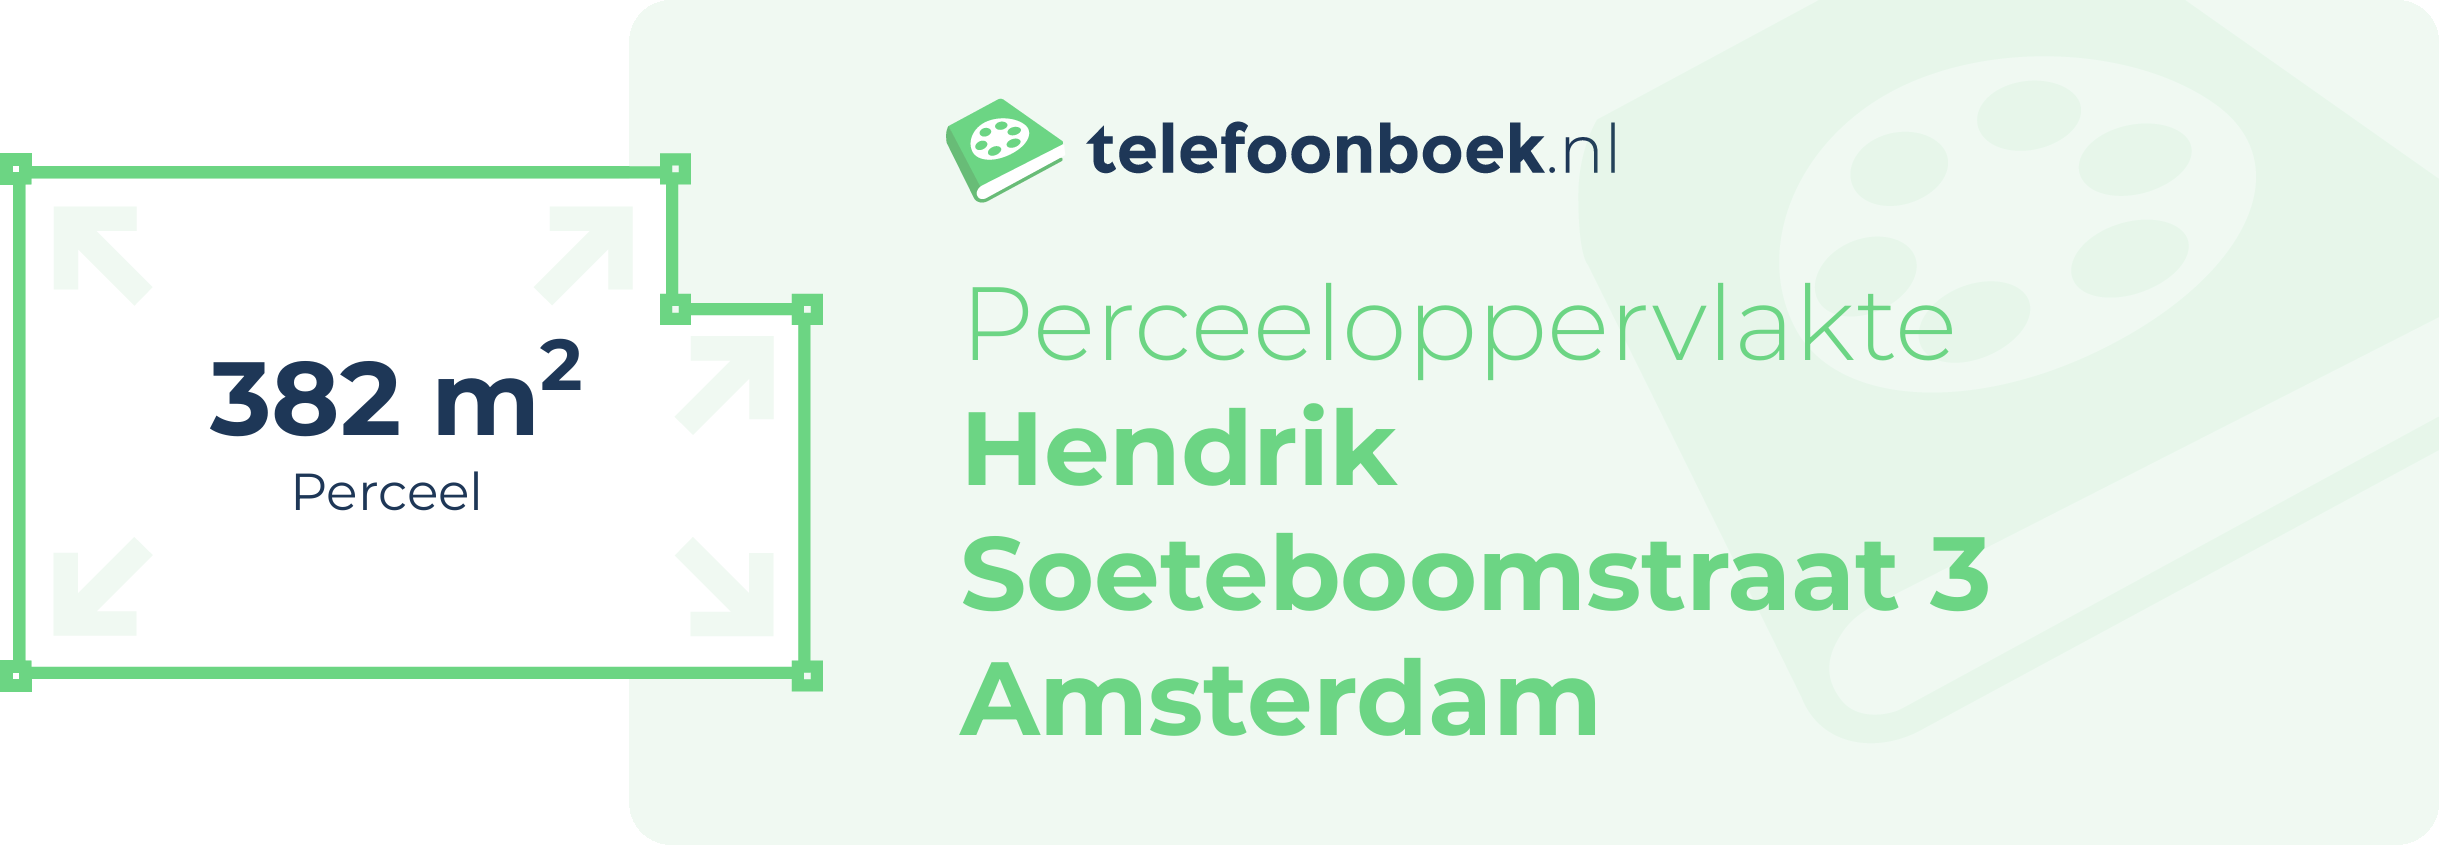 Perceeloppervlakte Hendrik Soeteboomstraat 3 Amsterdam